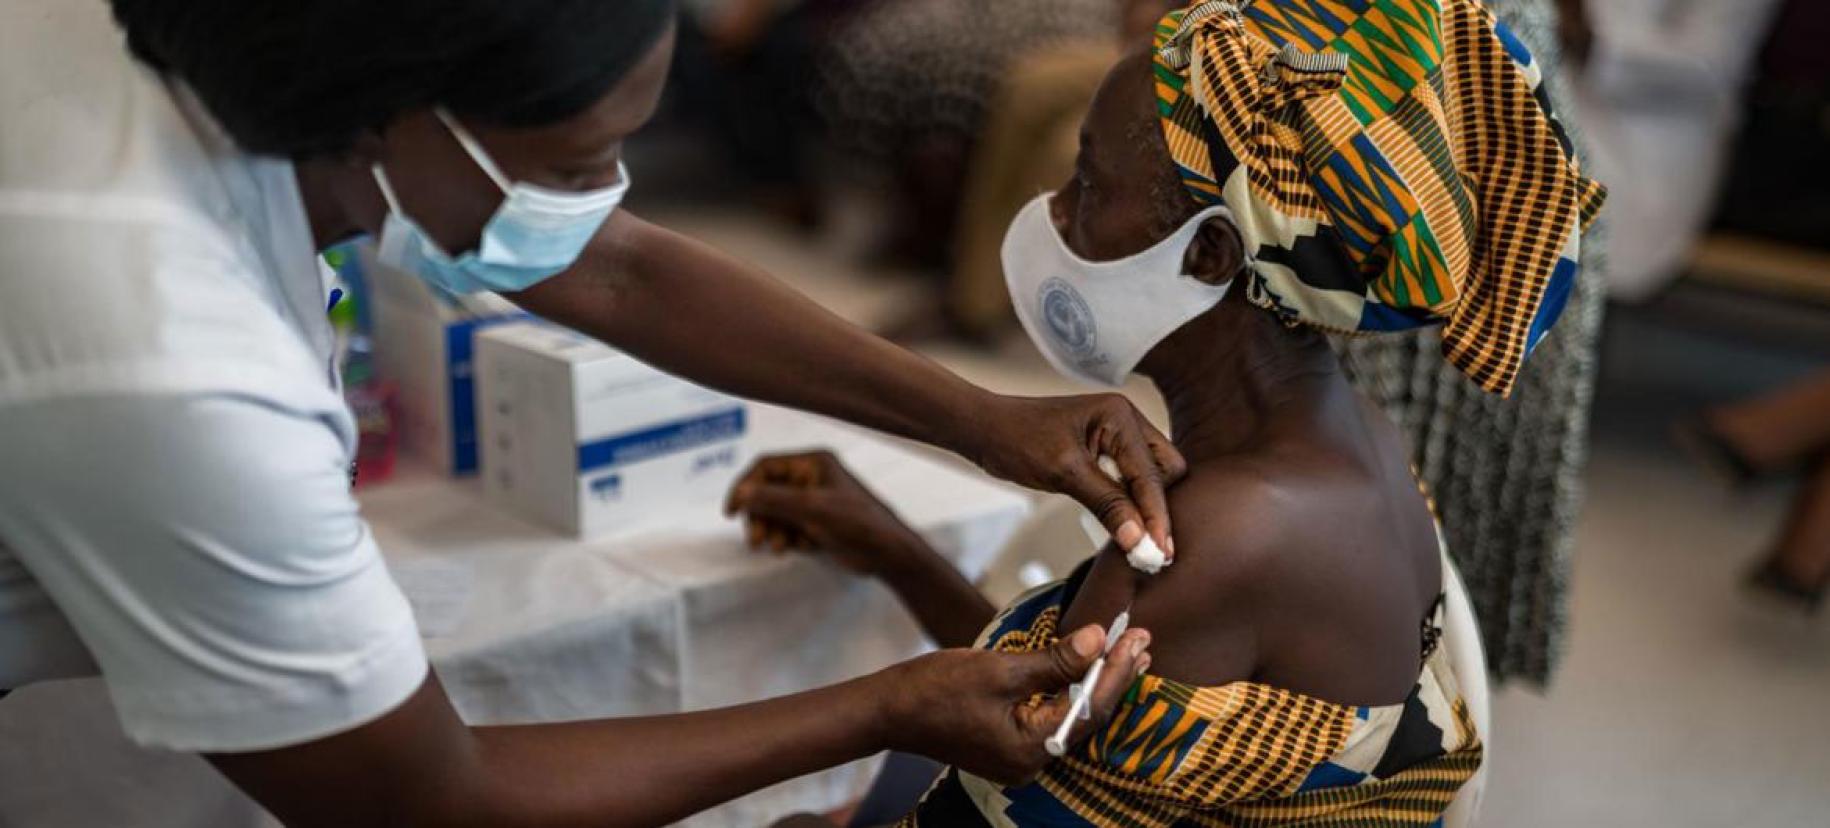 Une personne se fait vacciner contre la Covid-19 en Afrique.